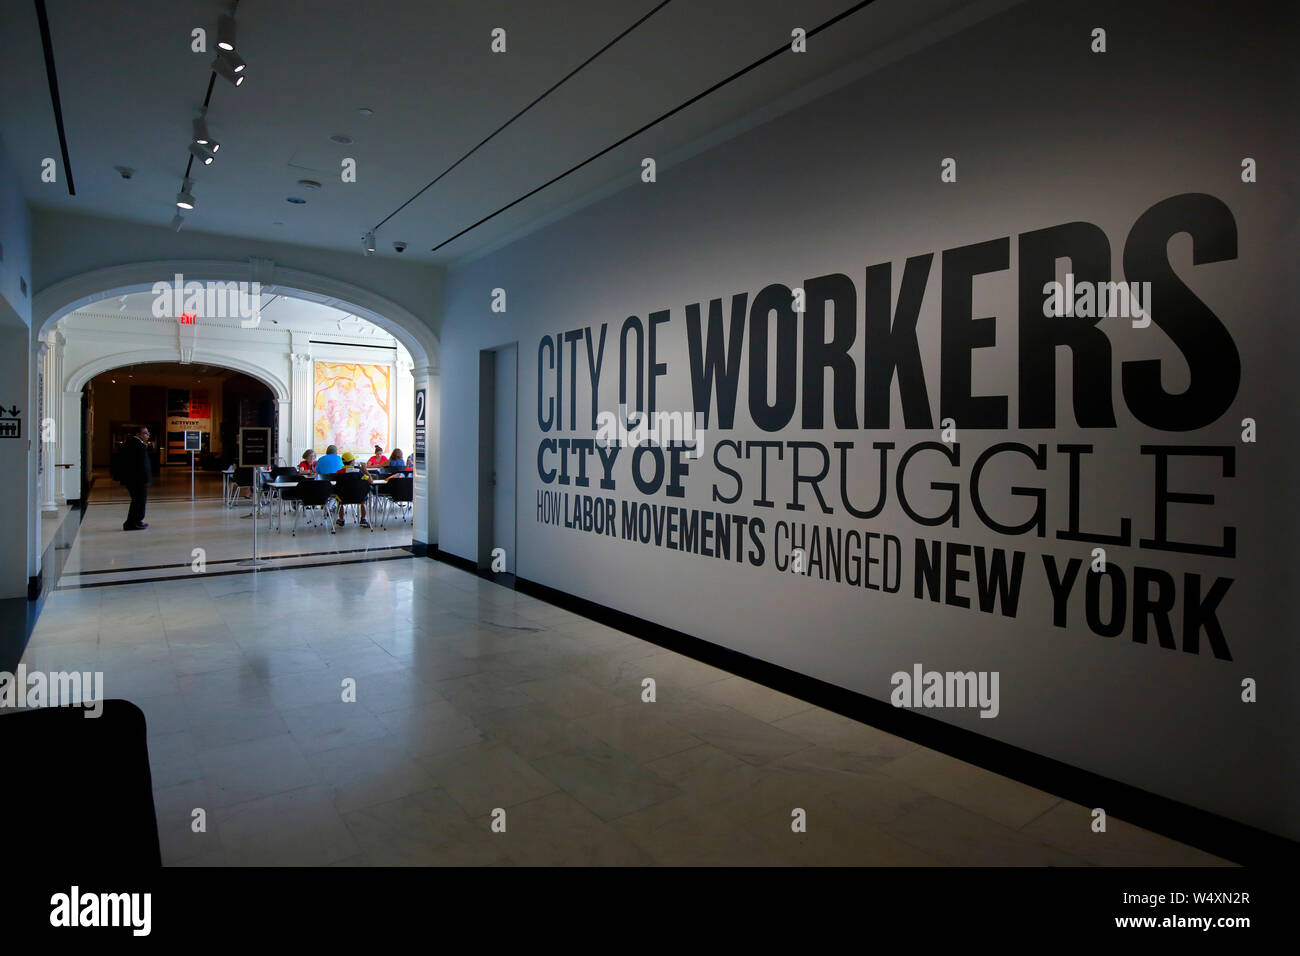 "Ville des travailleurs, Ville de lutte' titre d'exposition au Musée de la ville de New York Banque D'Images